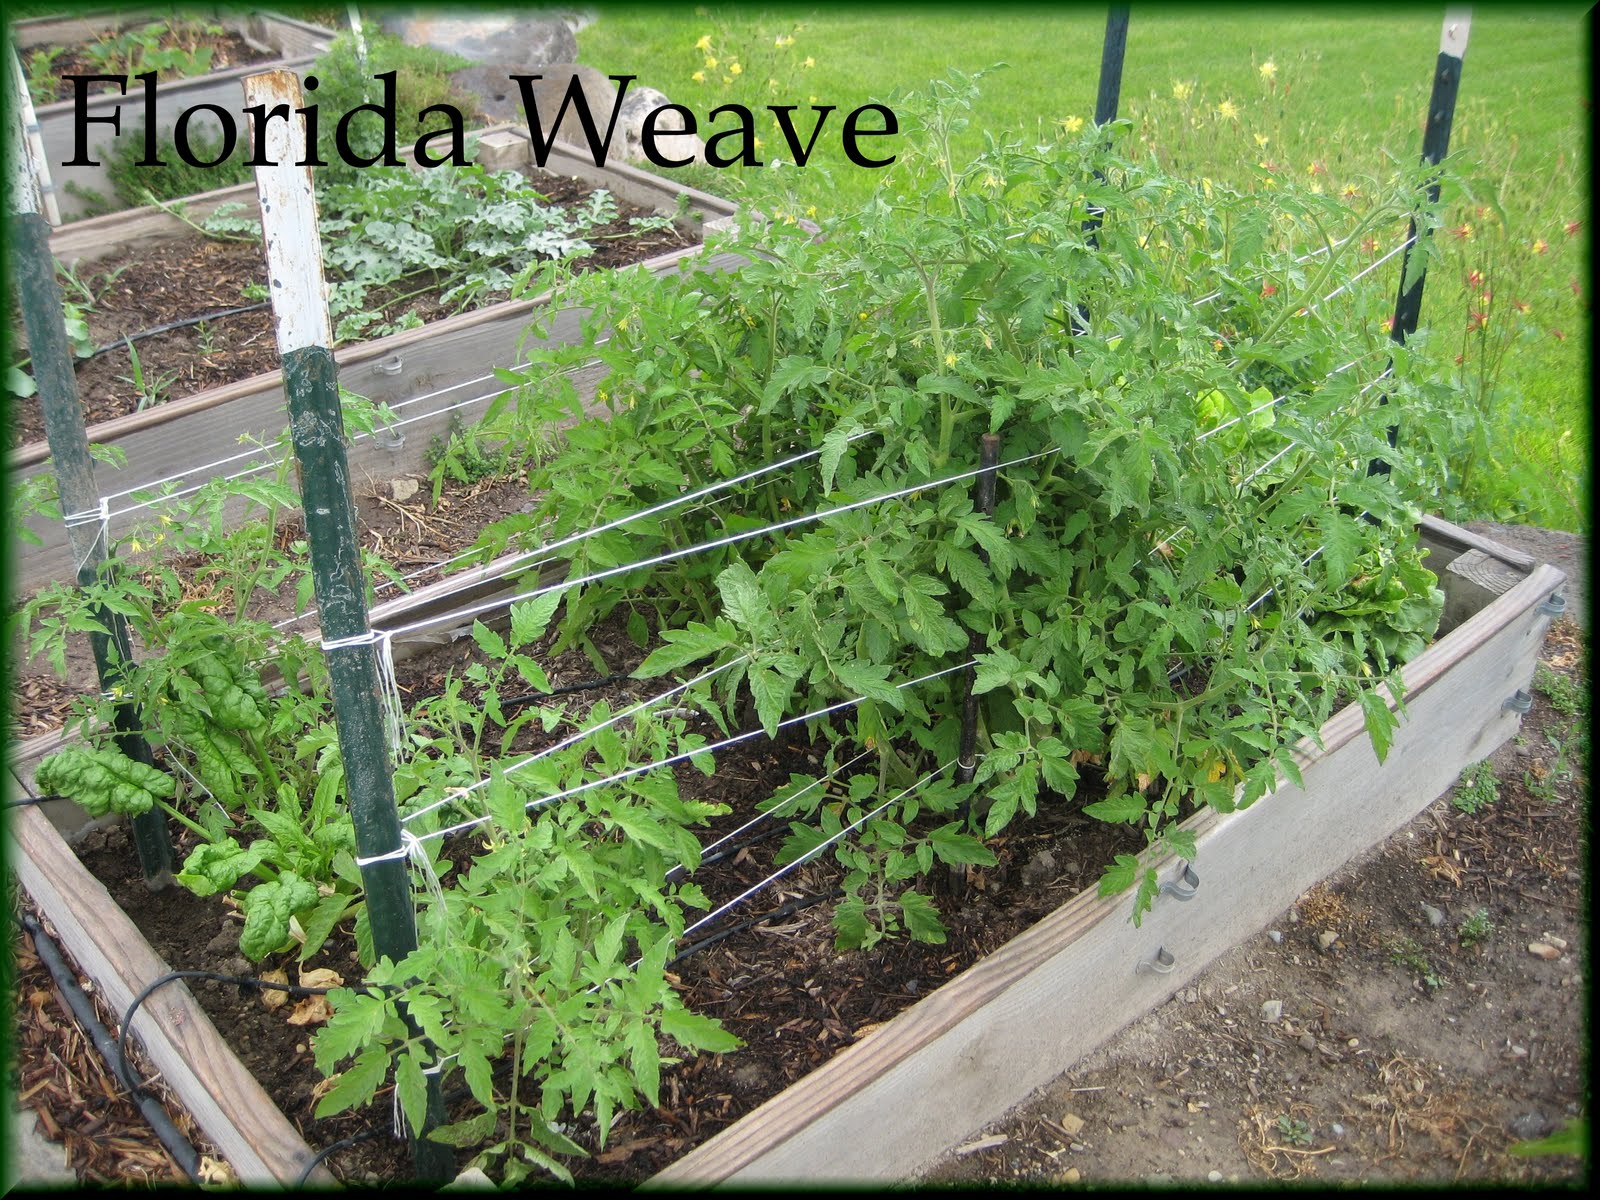 Enjoyingtheharvest: Staking Tomatoes- Florida Weave